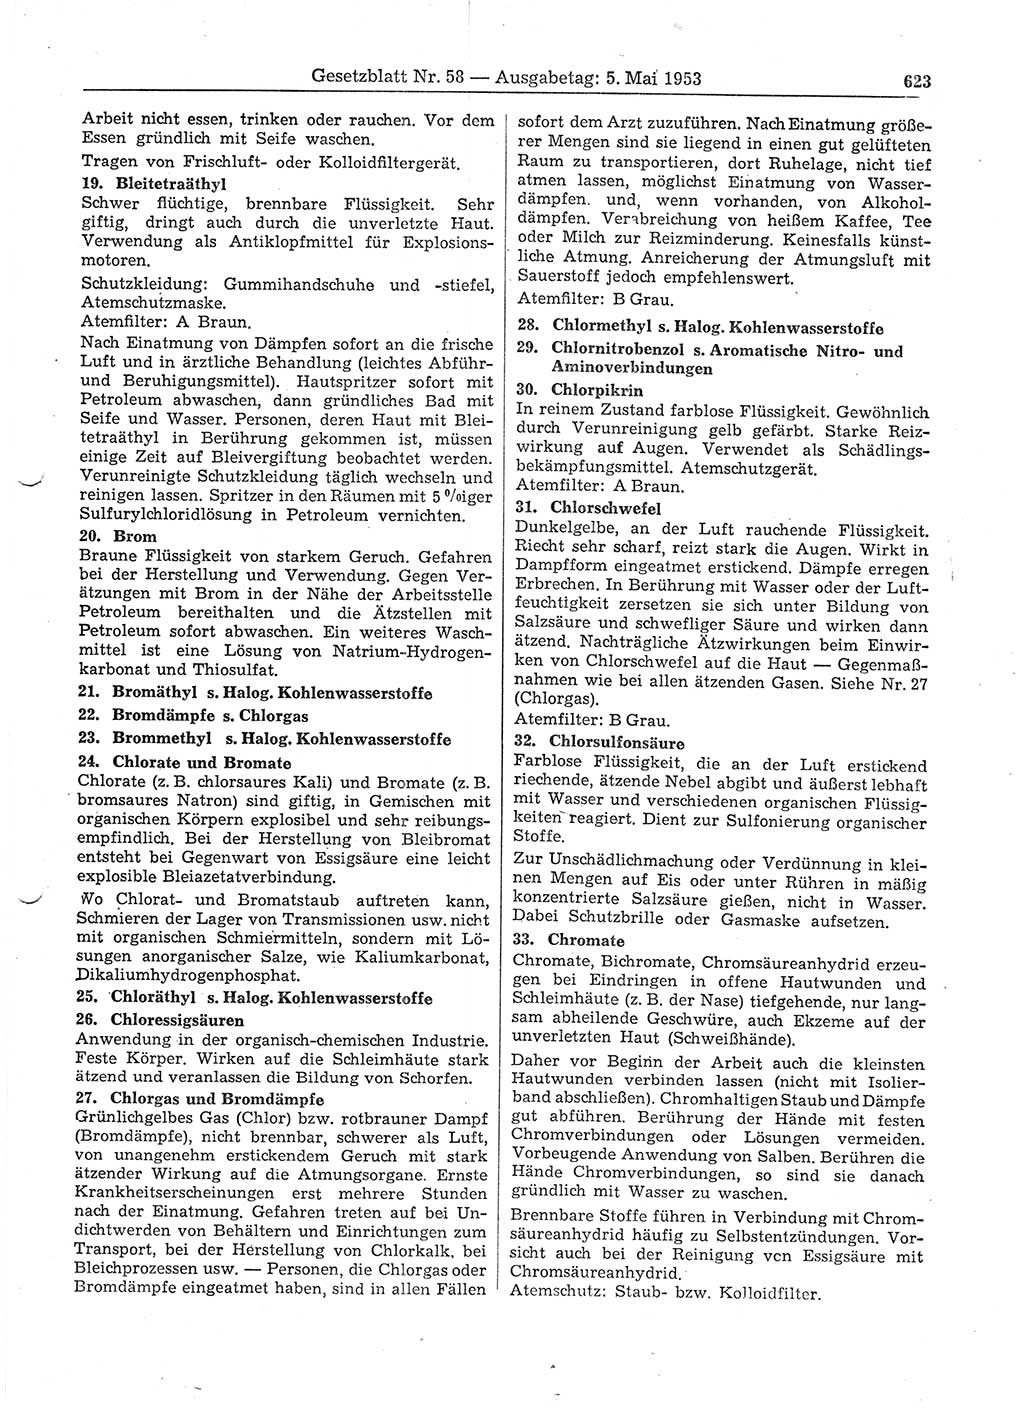 Gesetzblatt (GBl.) der Deutschen Demokratischen Republik (DDR) 1953, Seite 623 (GBl. DDR 1953, S. 623)